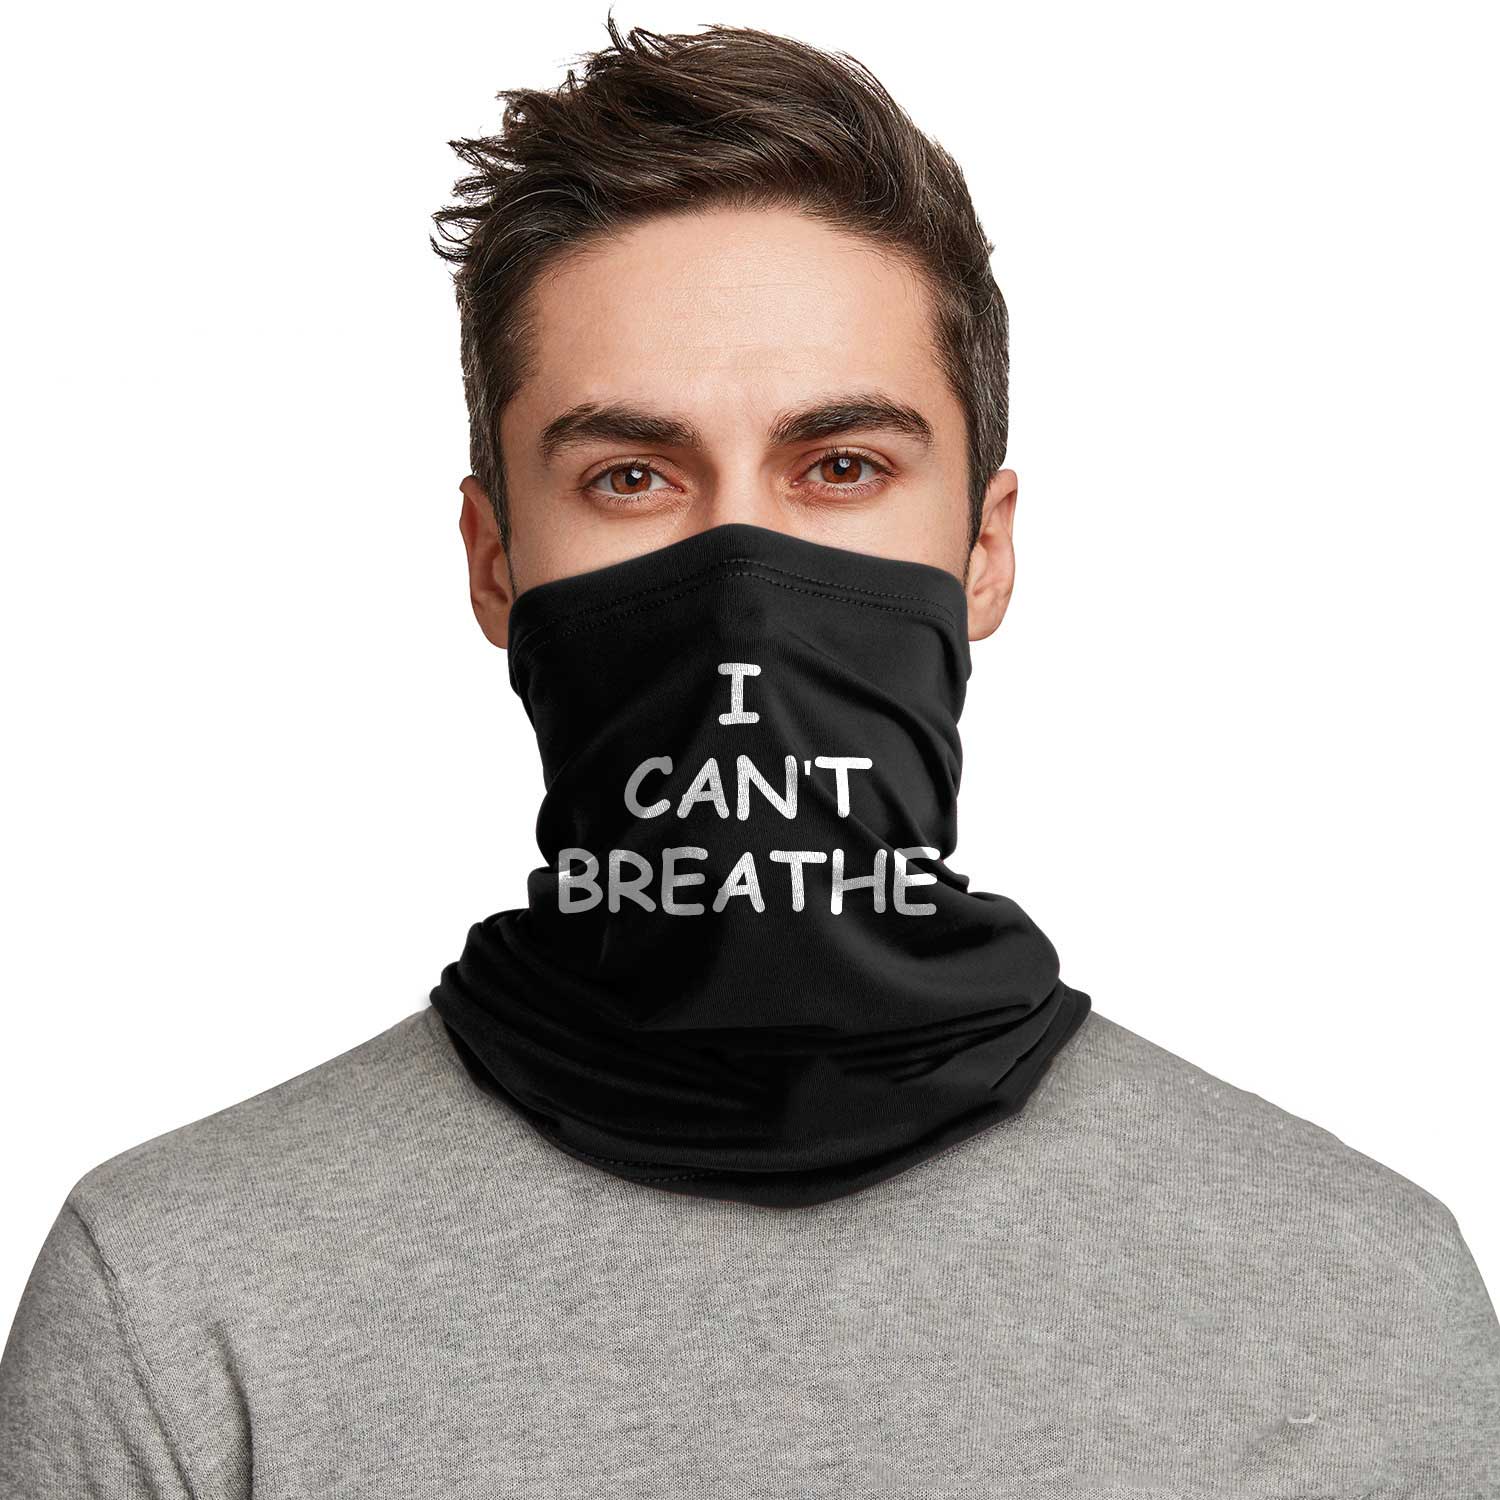 Ich kann nicht im Freien atmen Mund Maske winddicht Sport Gesichtsmaske Staubschild Schal Männer Frau Neckwärmer